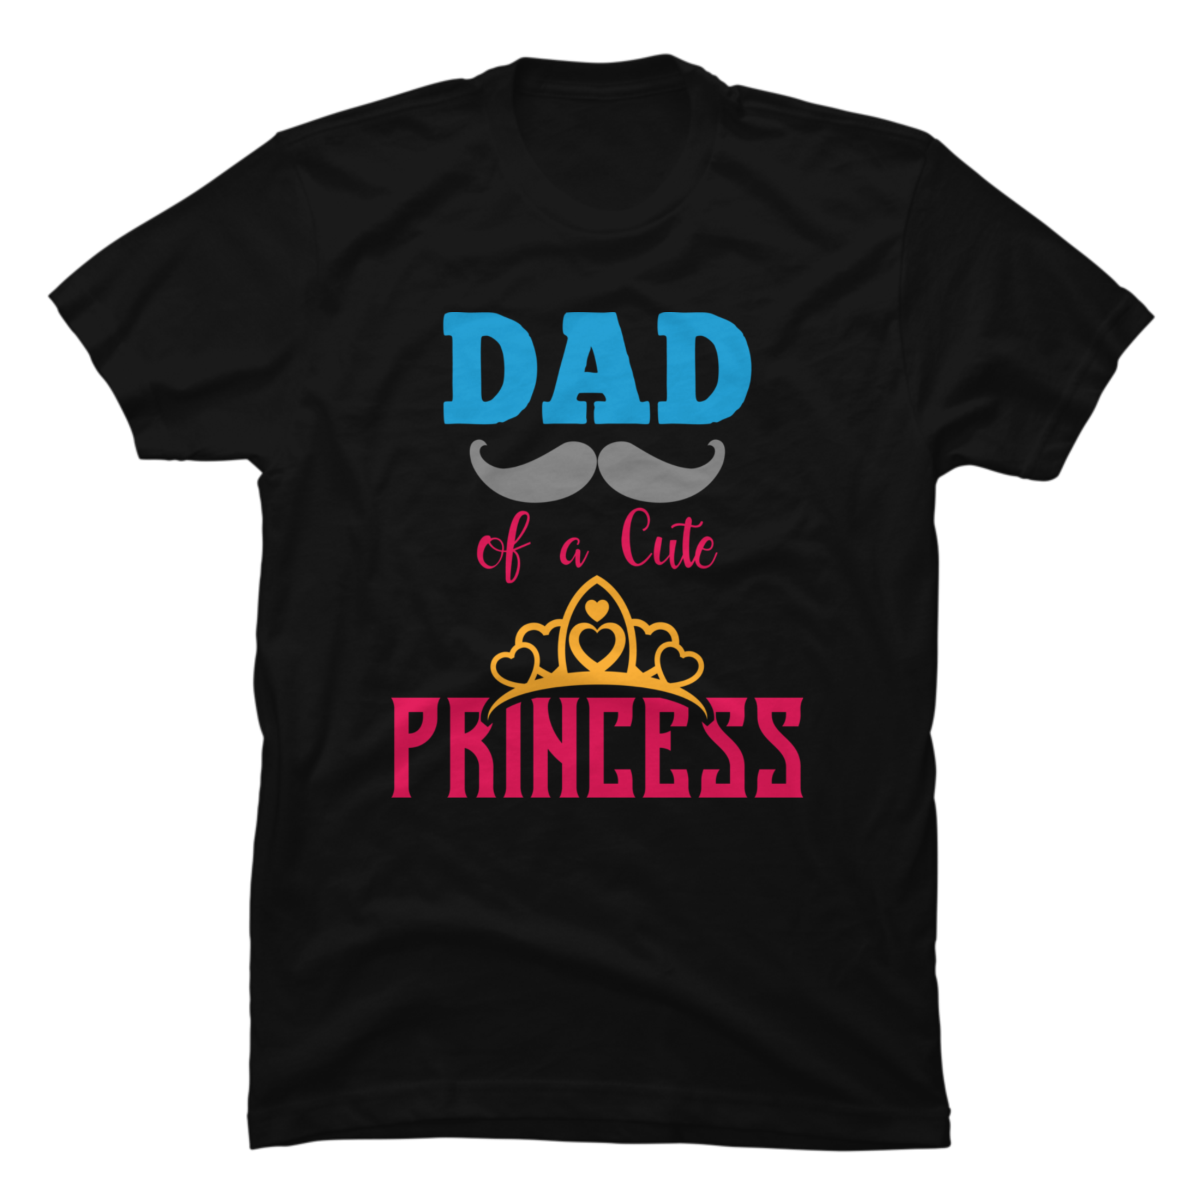 Dad of cute Princess - Buy t-shirt designs